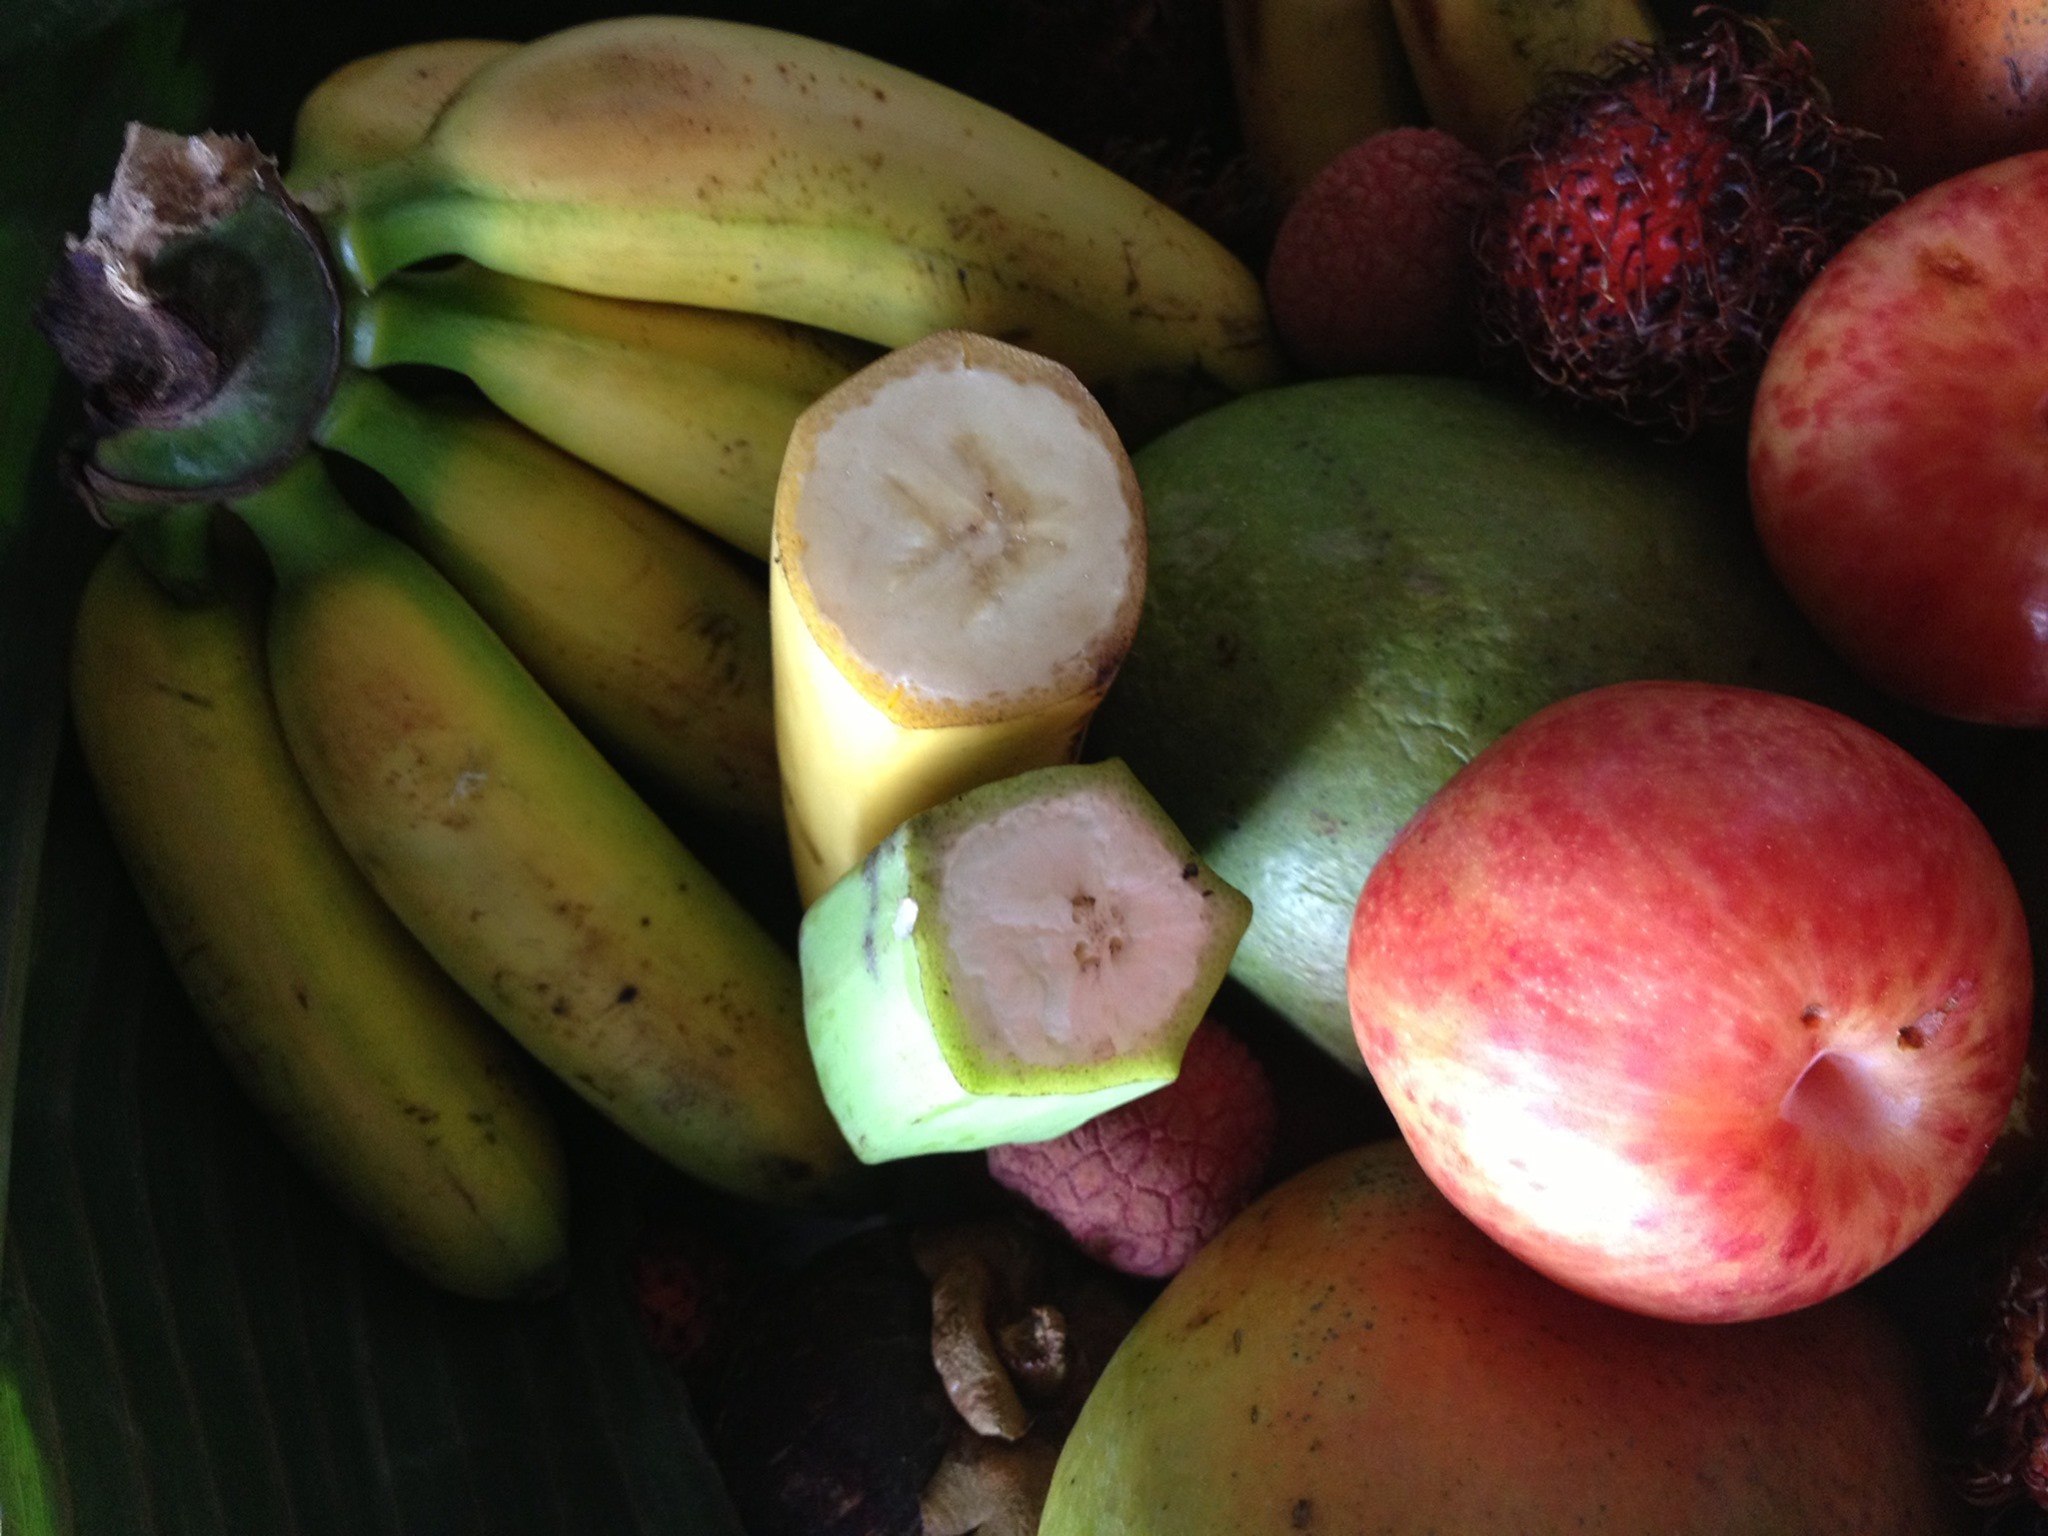 Tropica Mango Rare and Exotic Tropical Fruit Tree Nursery